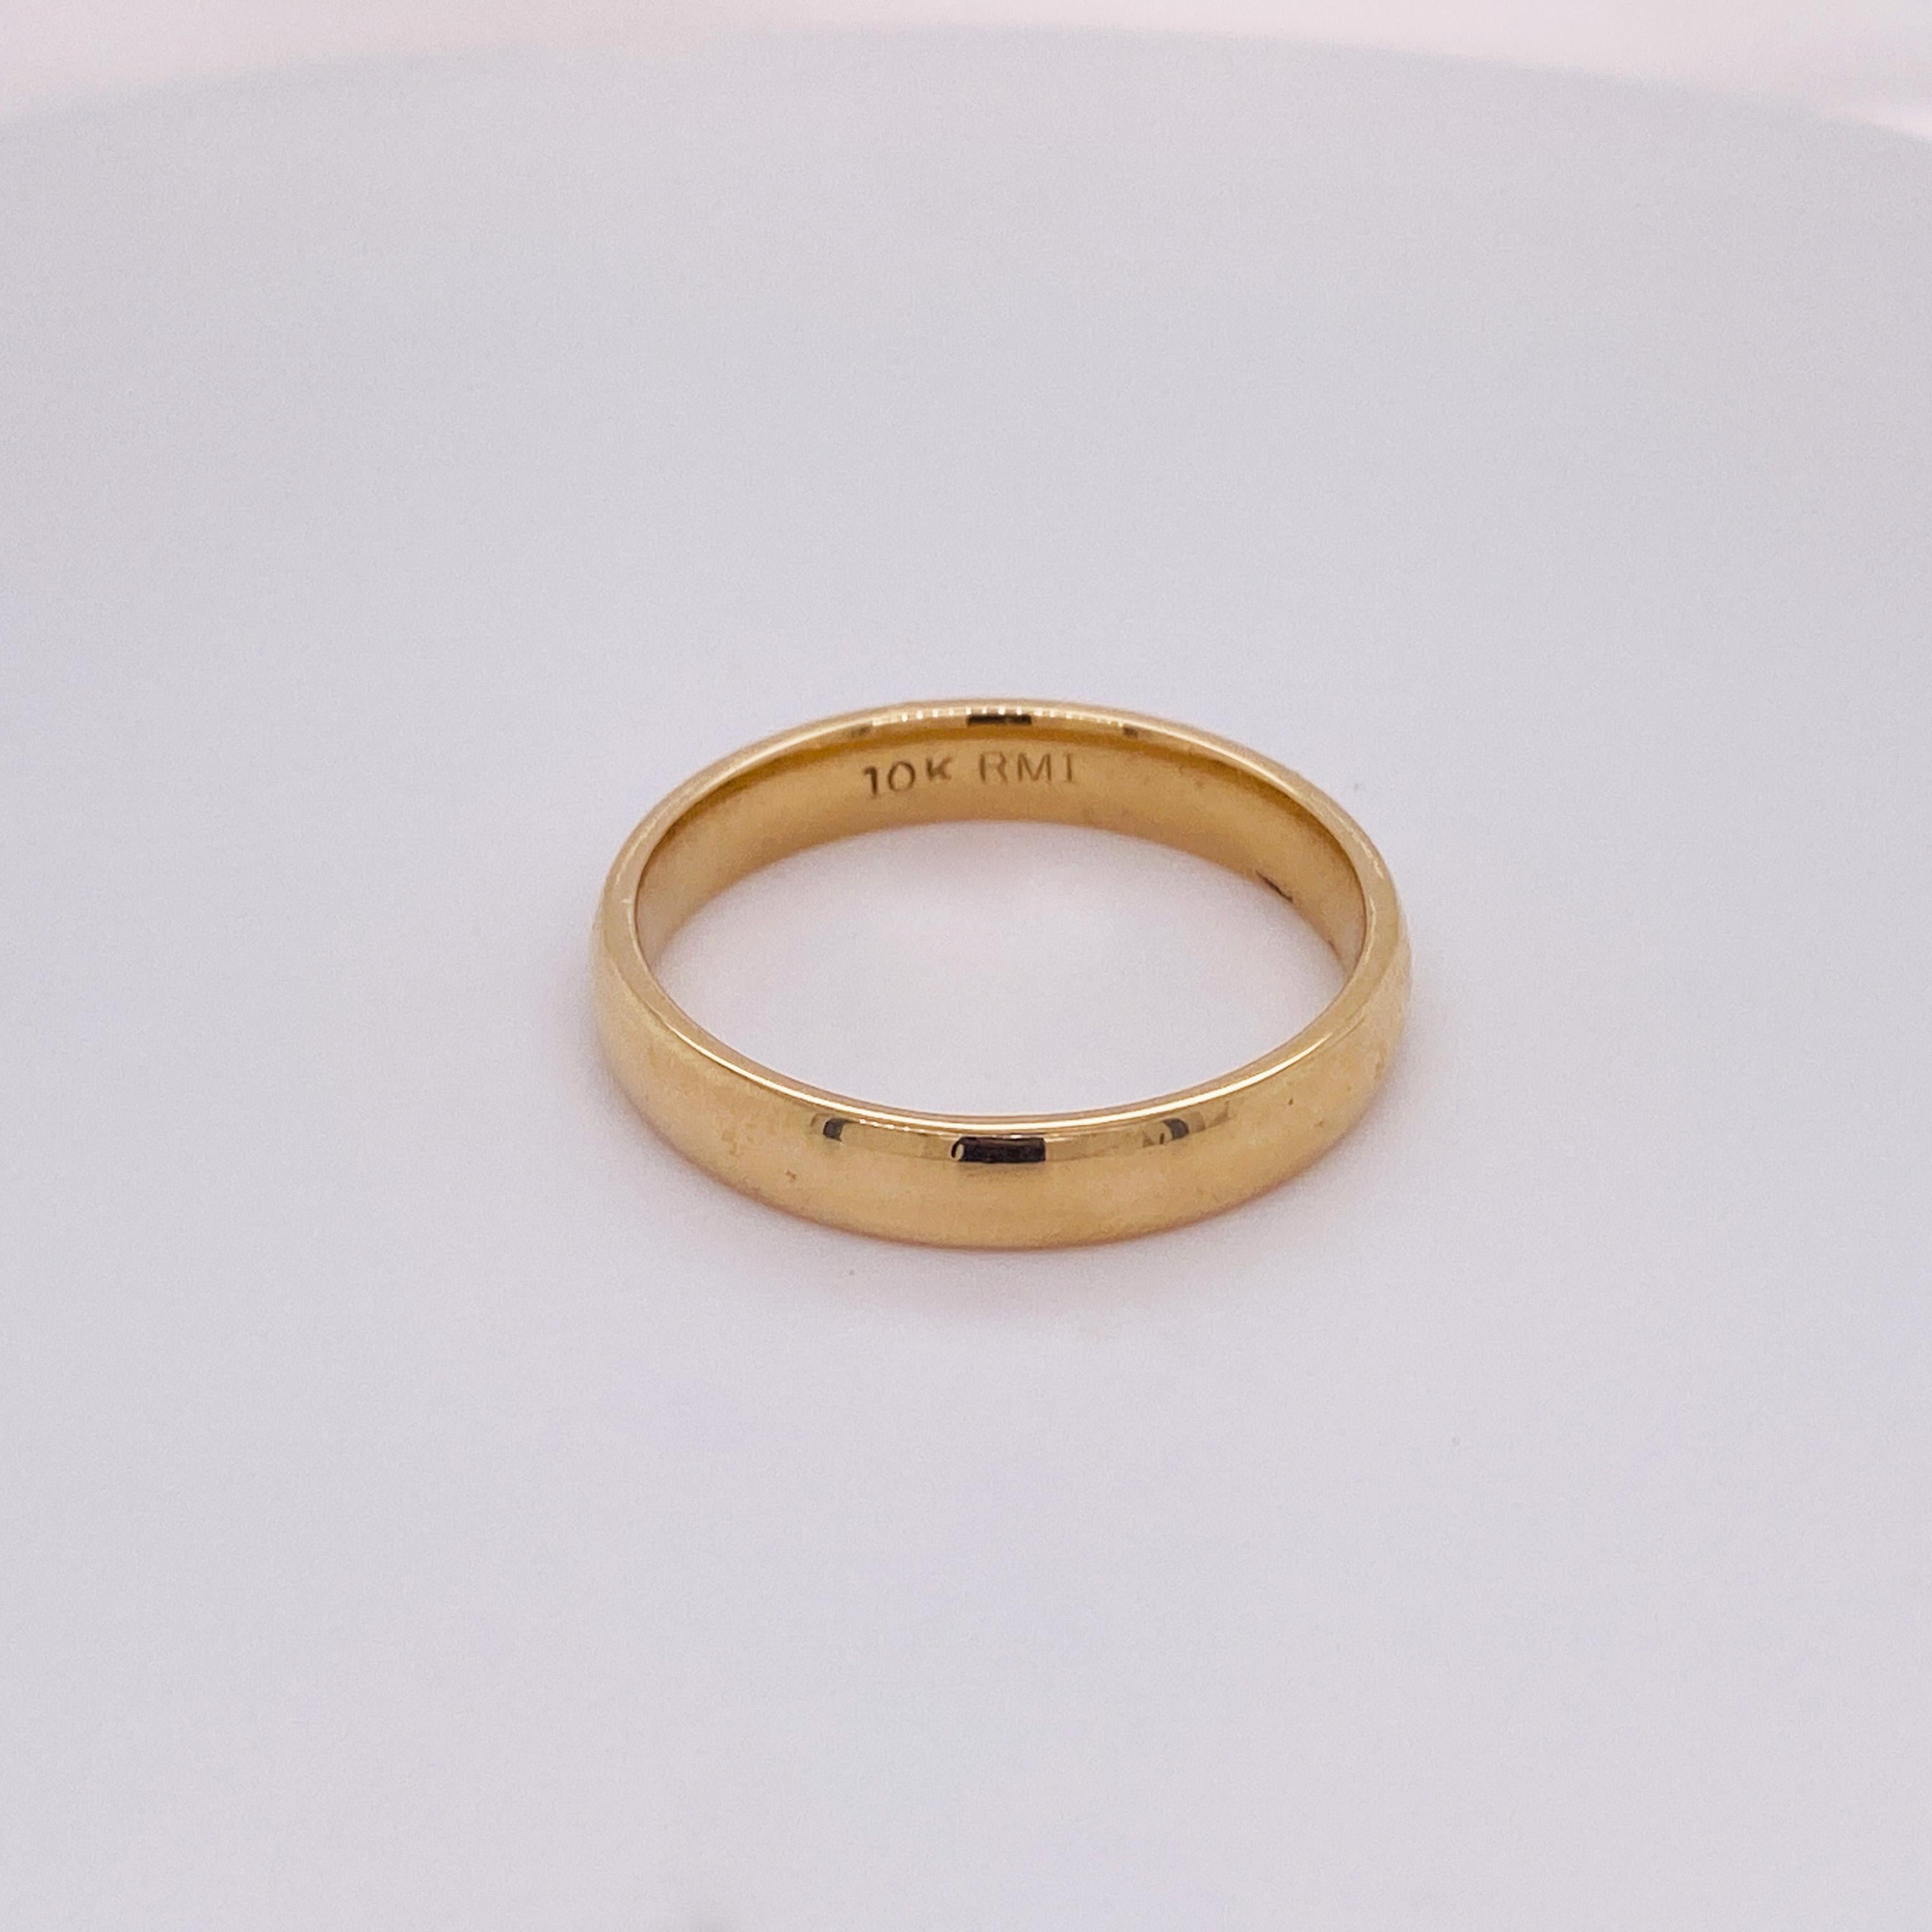 rmi 10k gold ring